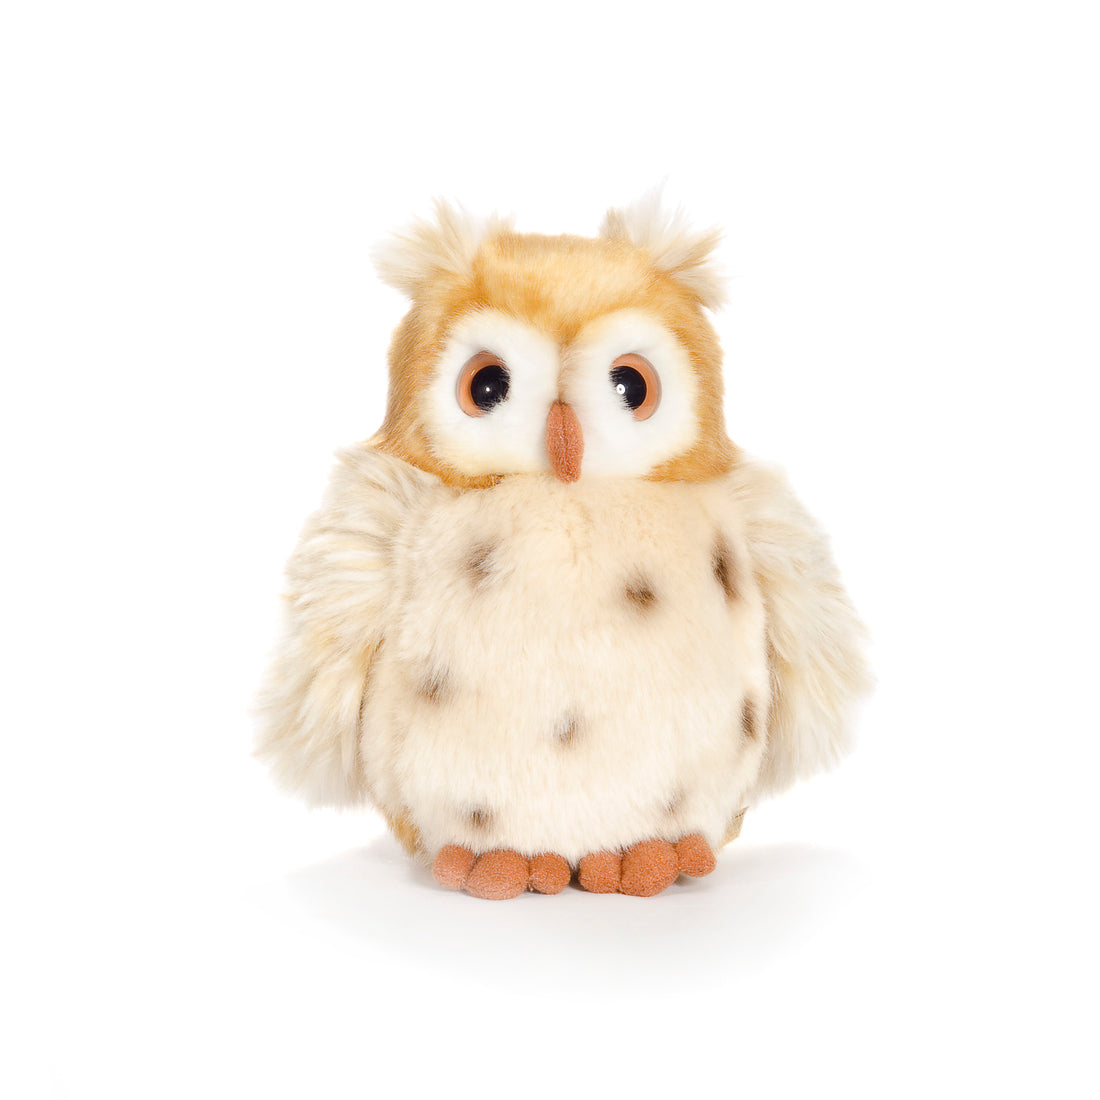 wwf-plush-owl-1